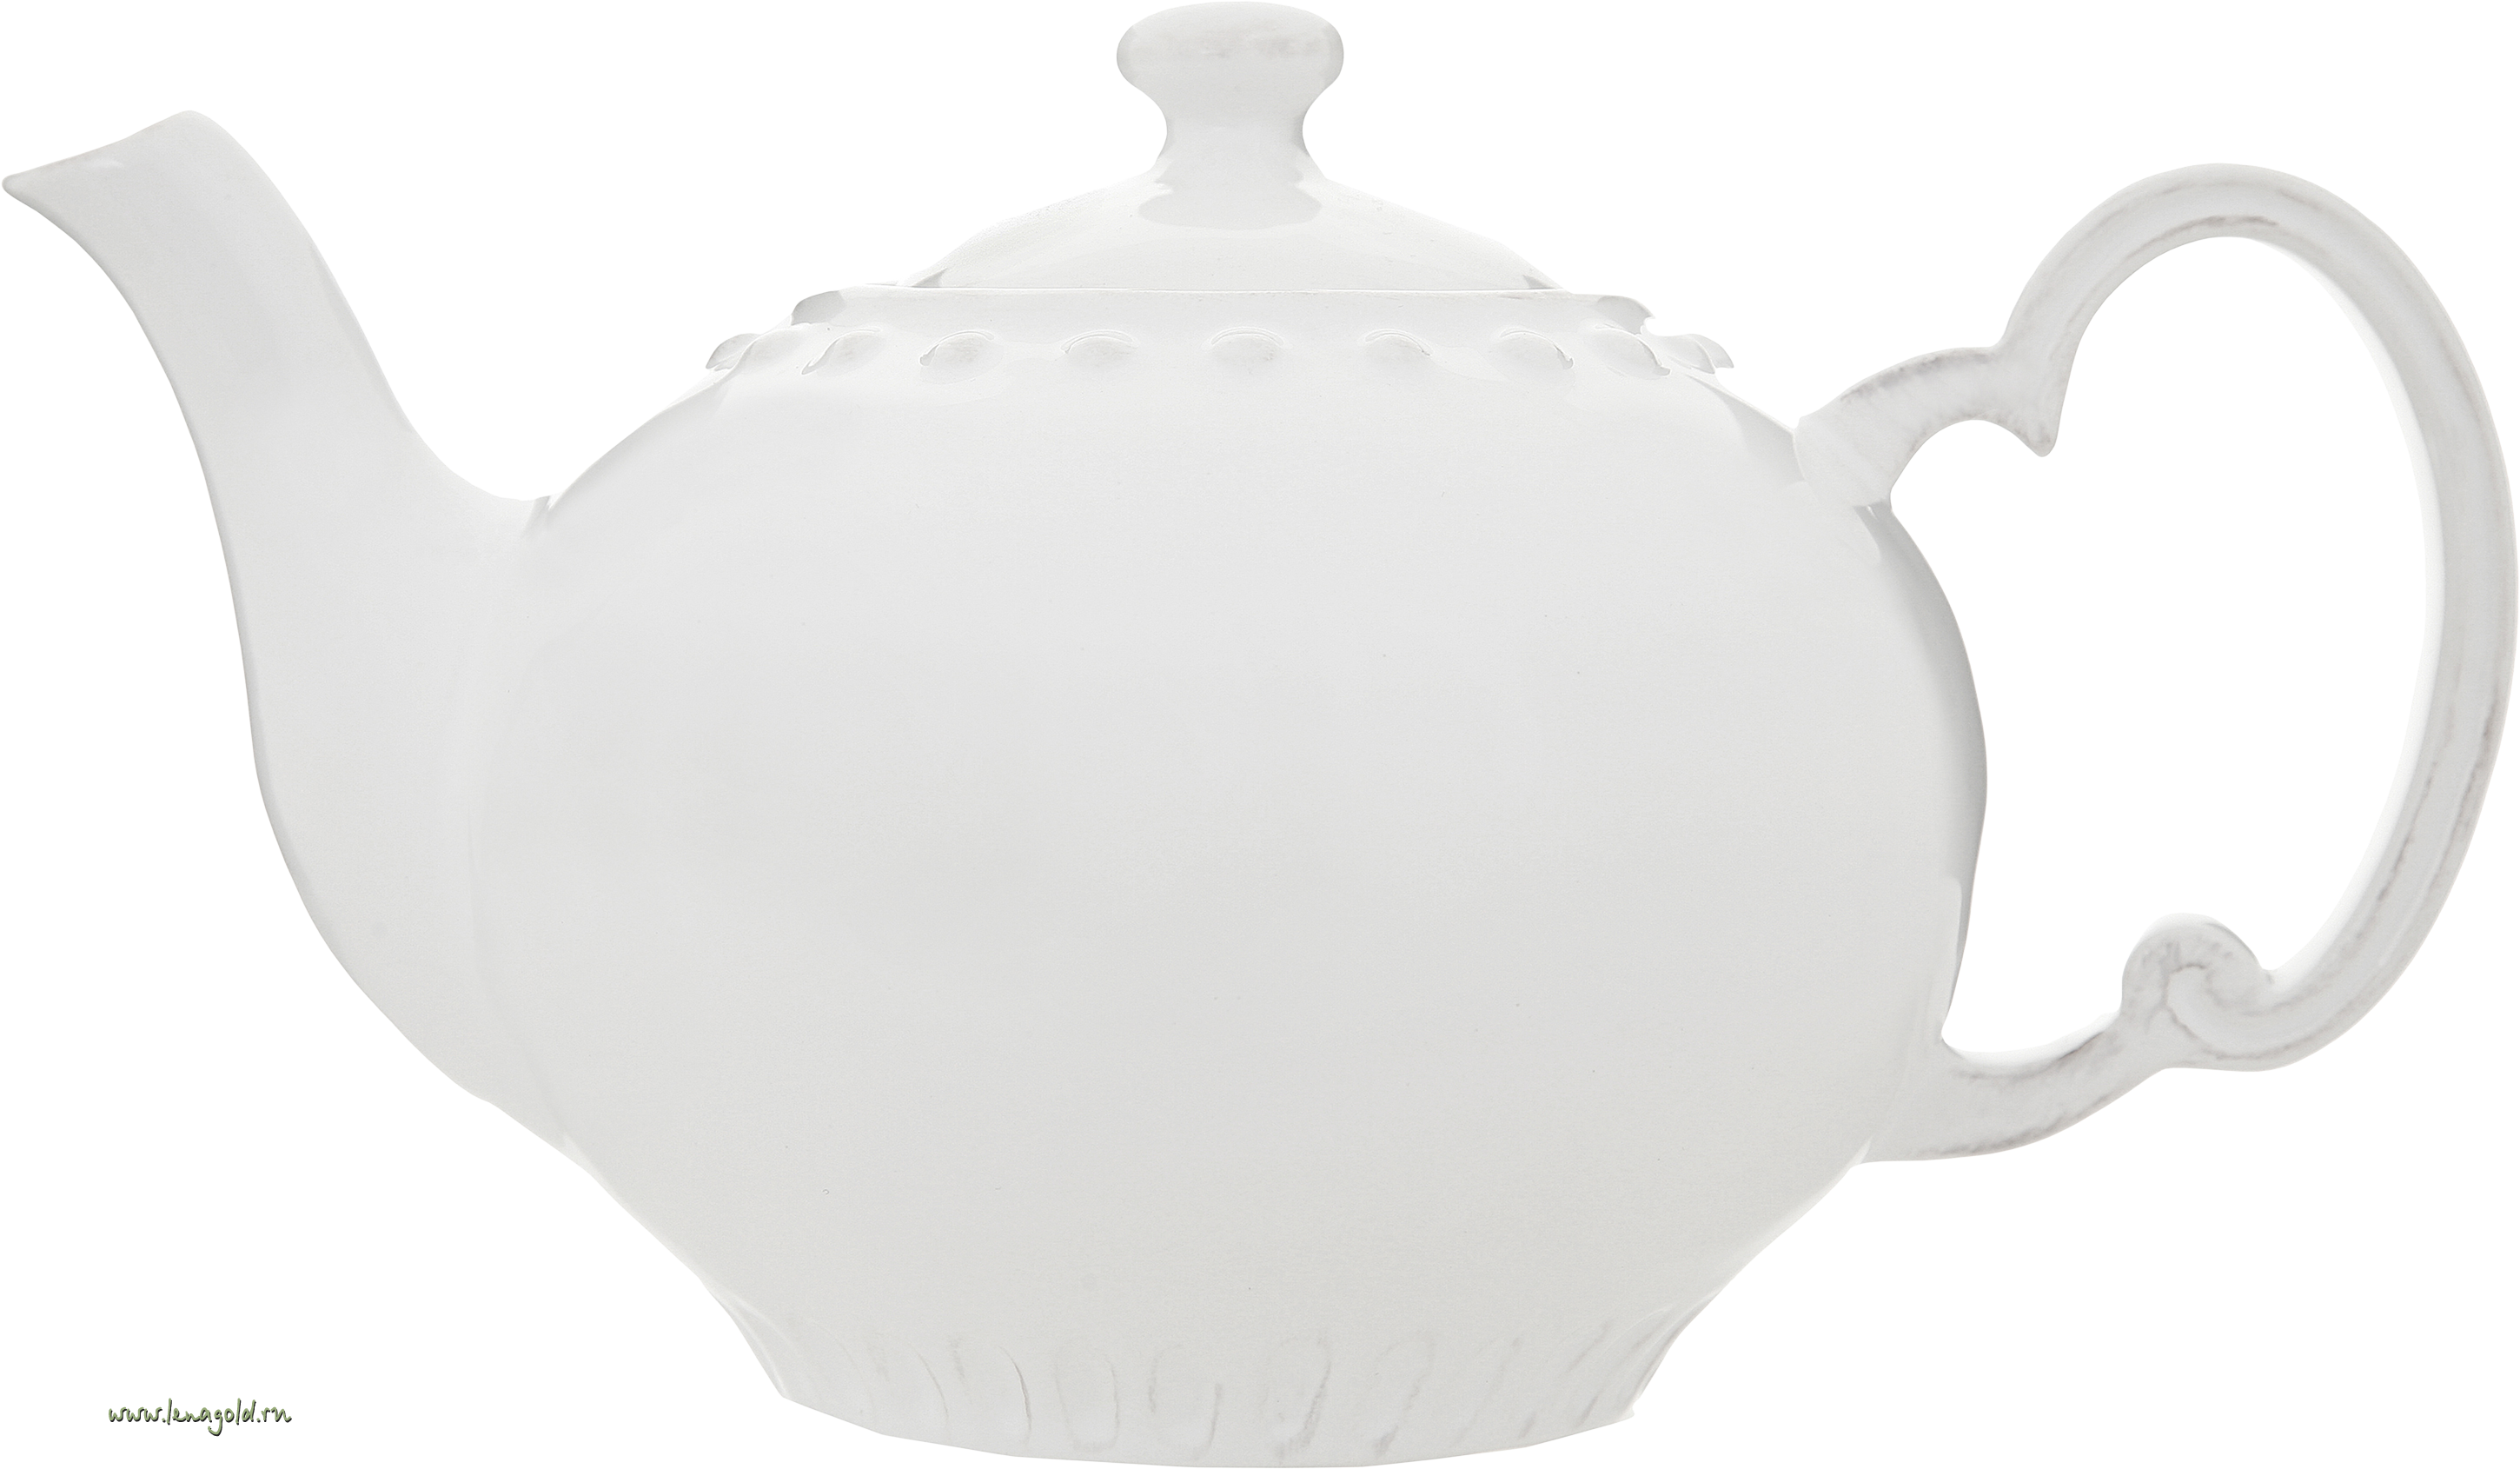 Tea kettle PNG image